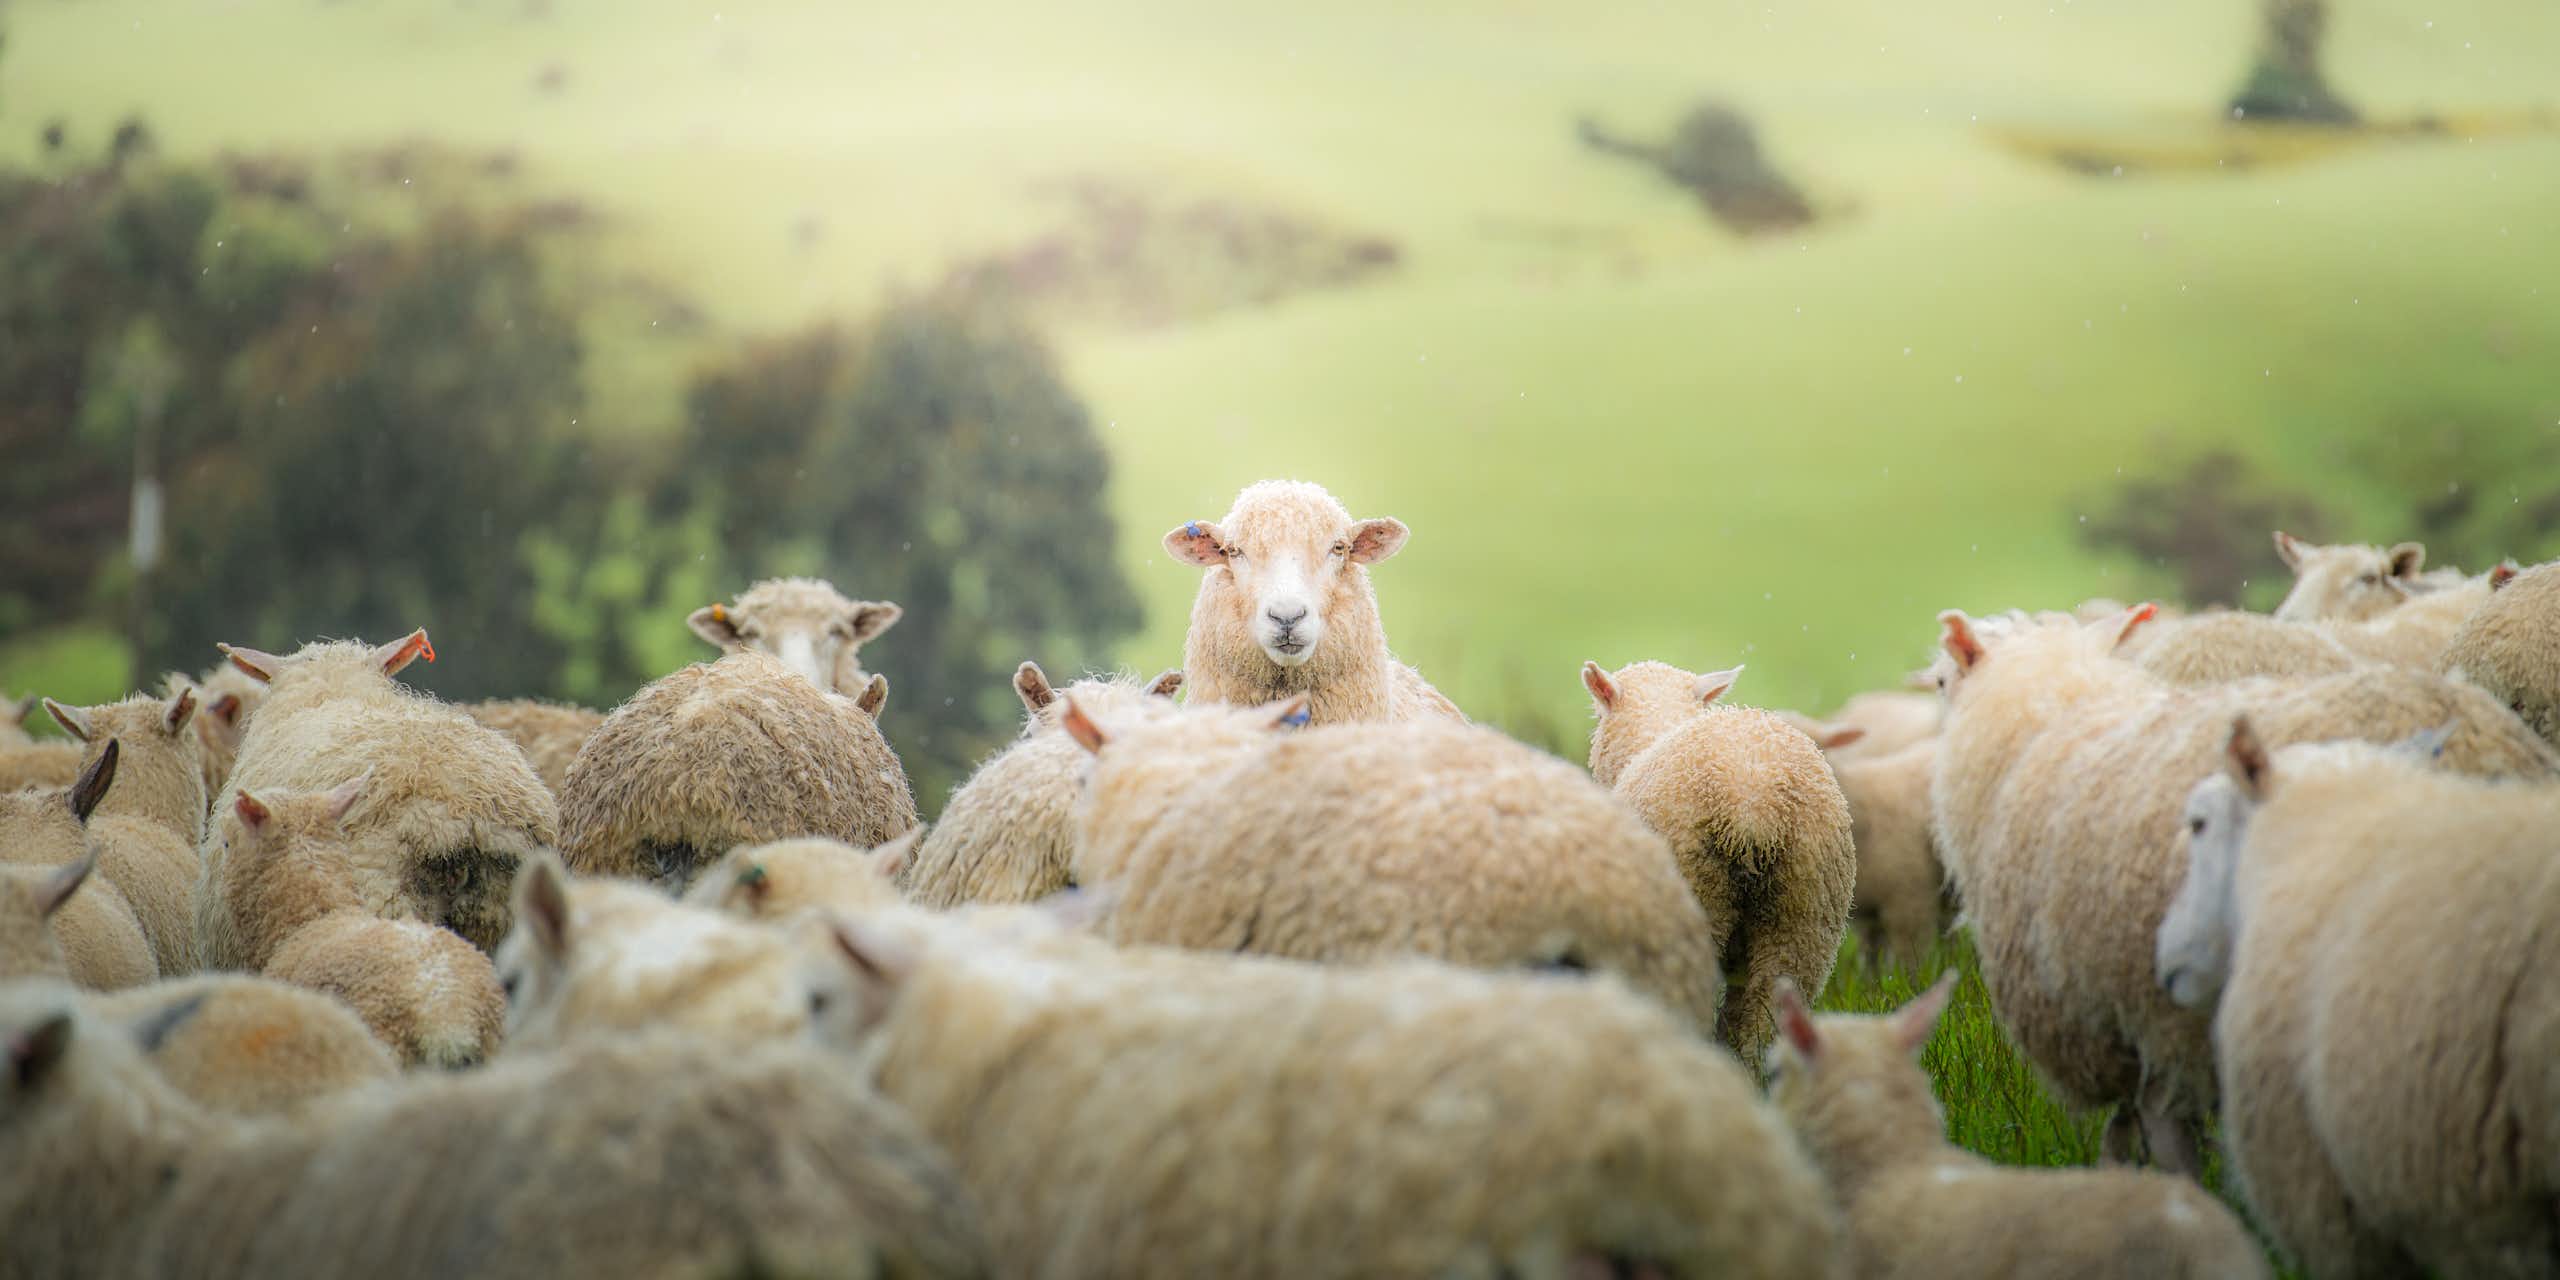 A sheep staring at camera